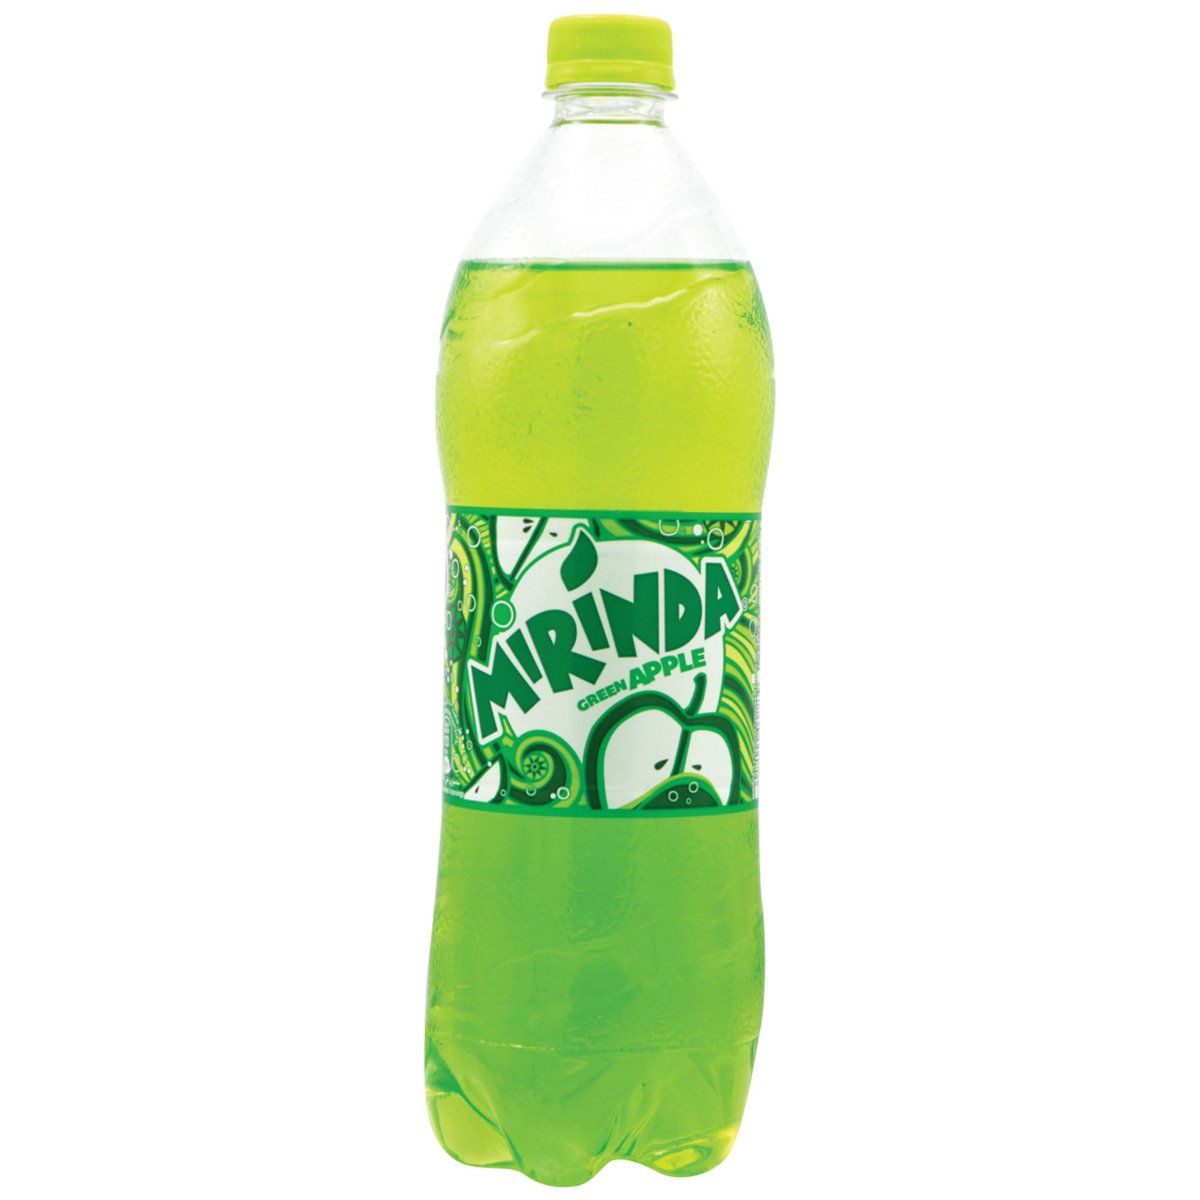 اشتري قم بشراء ميرندا مشروب تفاح اخضر 1 لتر Online at Best Price من الموقع - من لولو هايبر ماركت Cola Bottle في السعودية